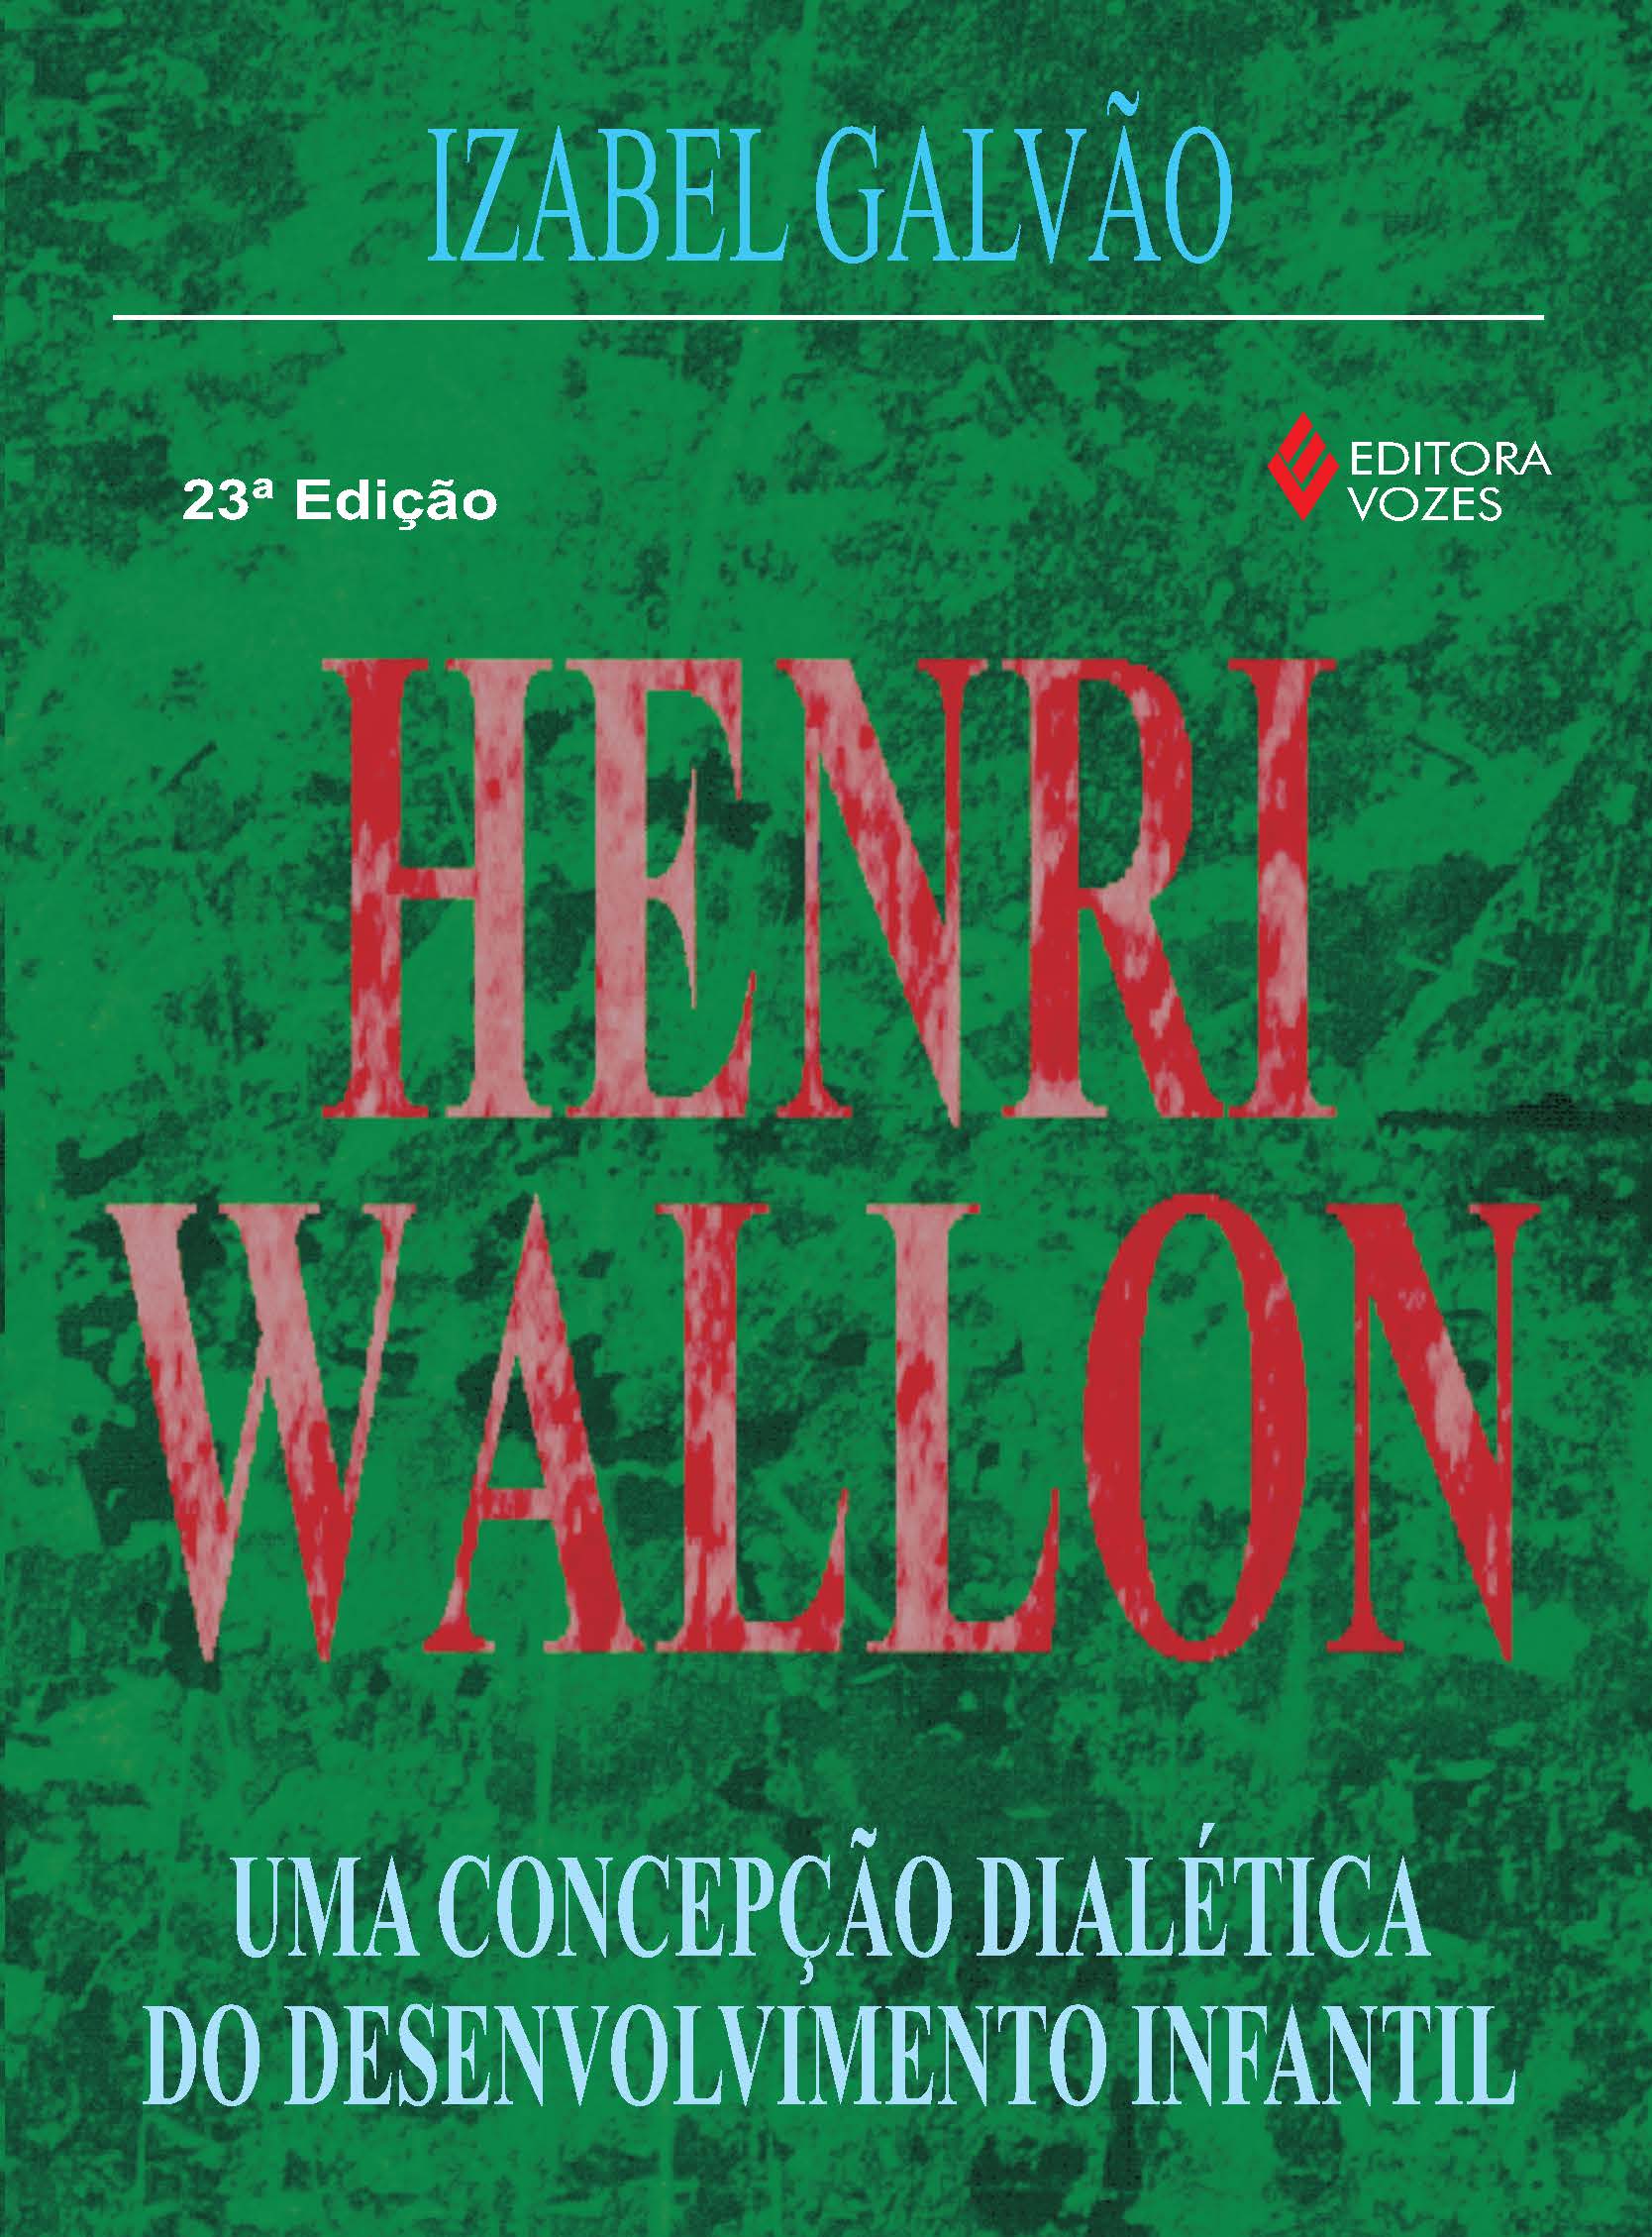 Henri Wallon: Uma Concepção Dialética do Desenvolvimento Infantil